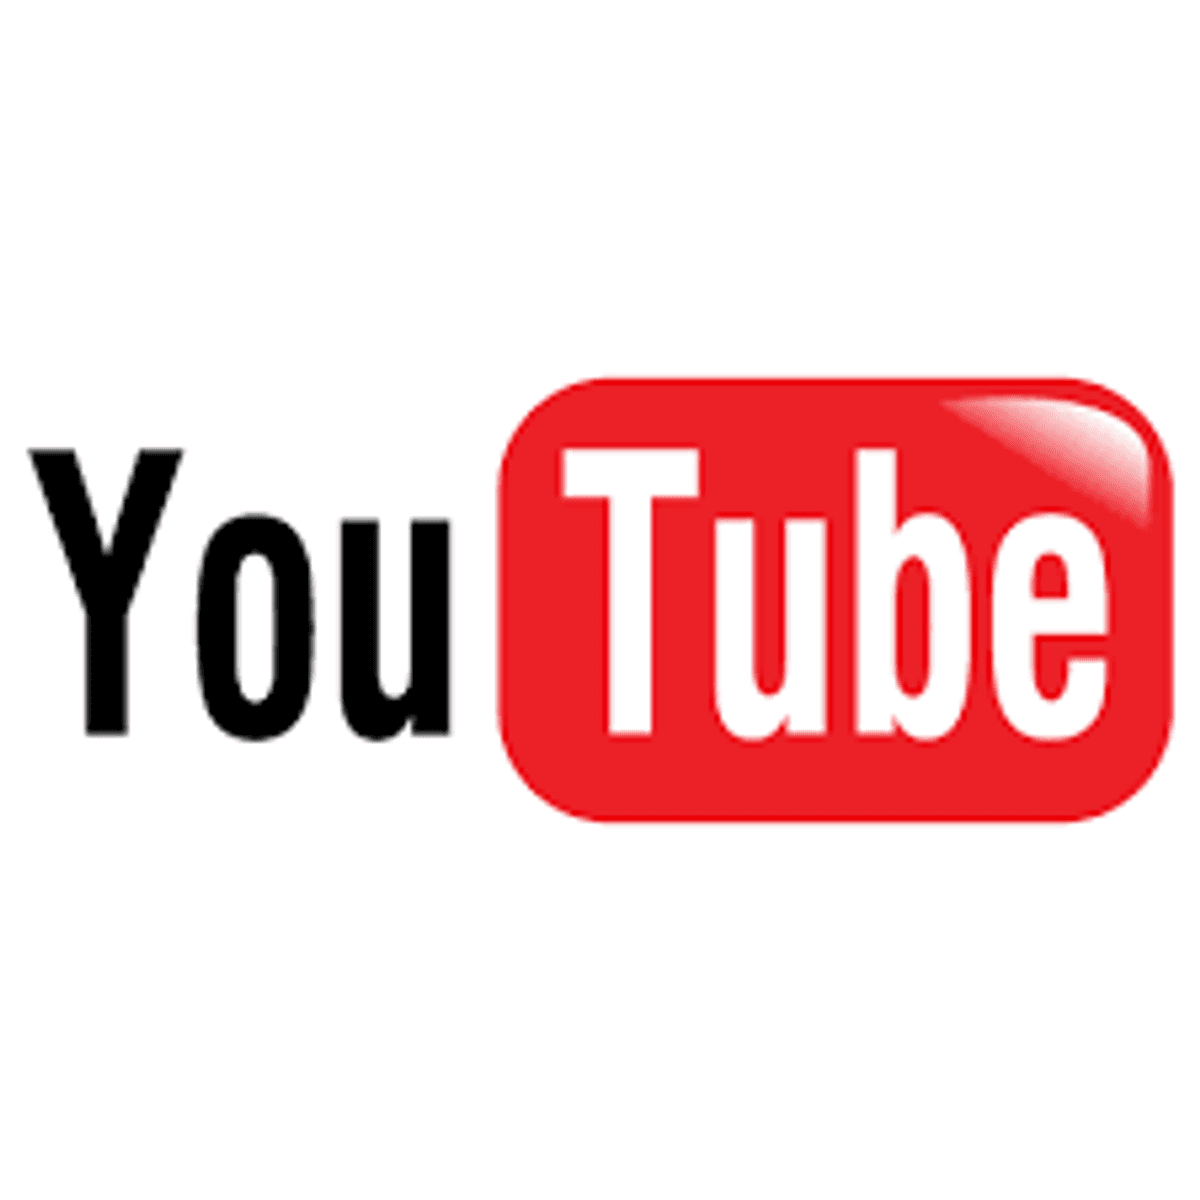 Netflix en YouTube verlagen beeldkwaliteit in coronacrisis image